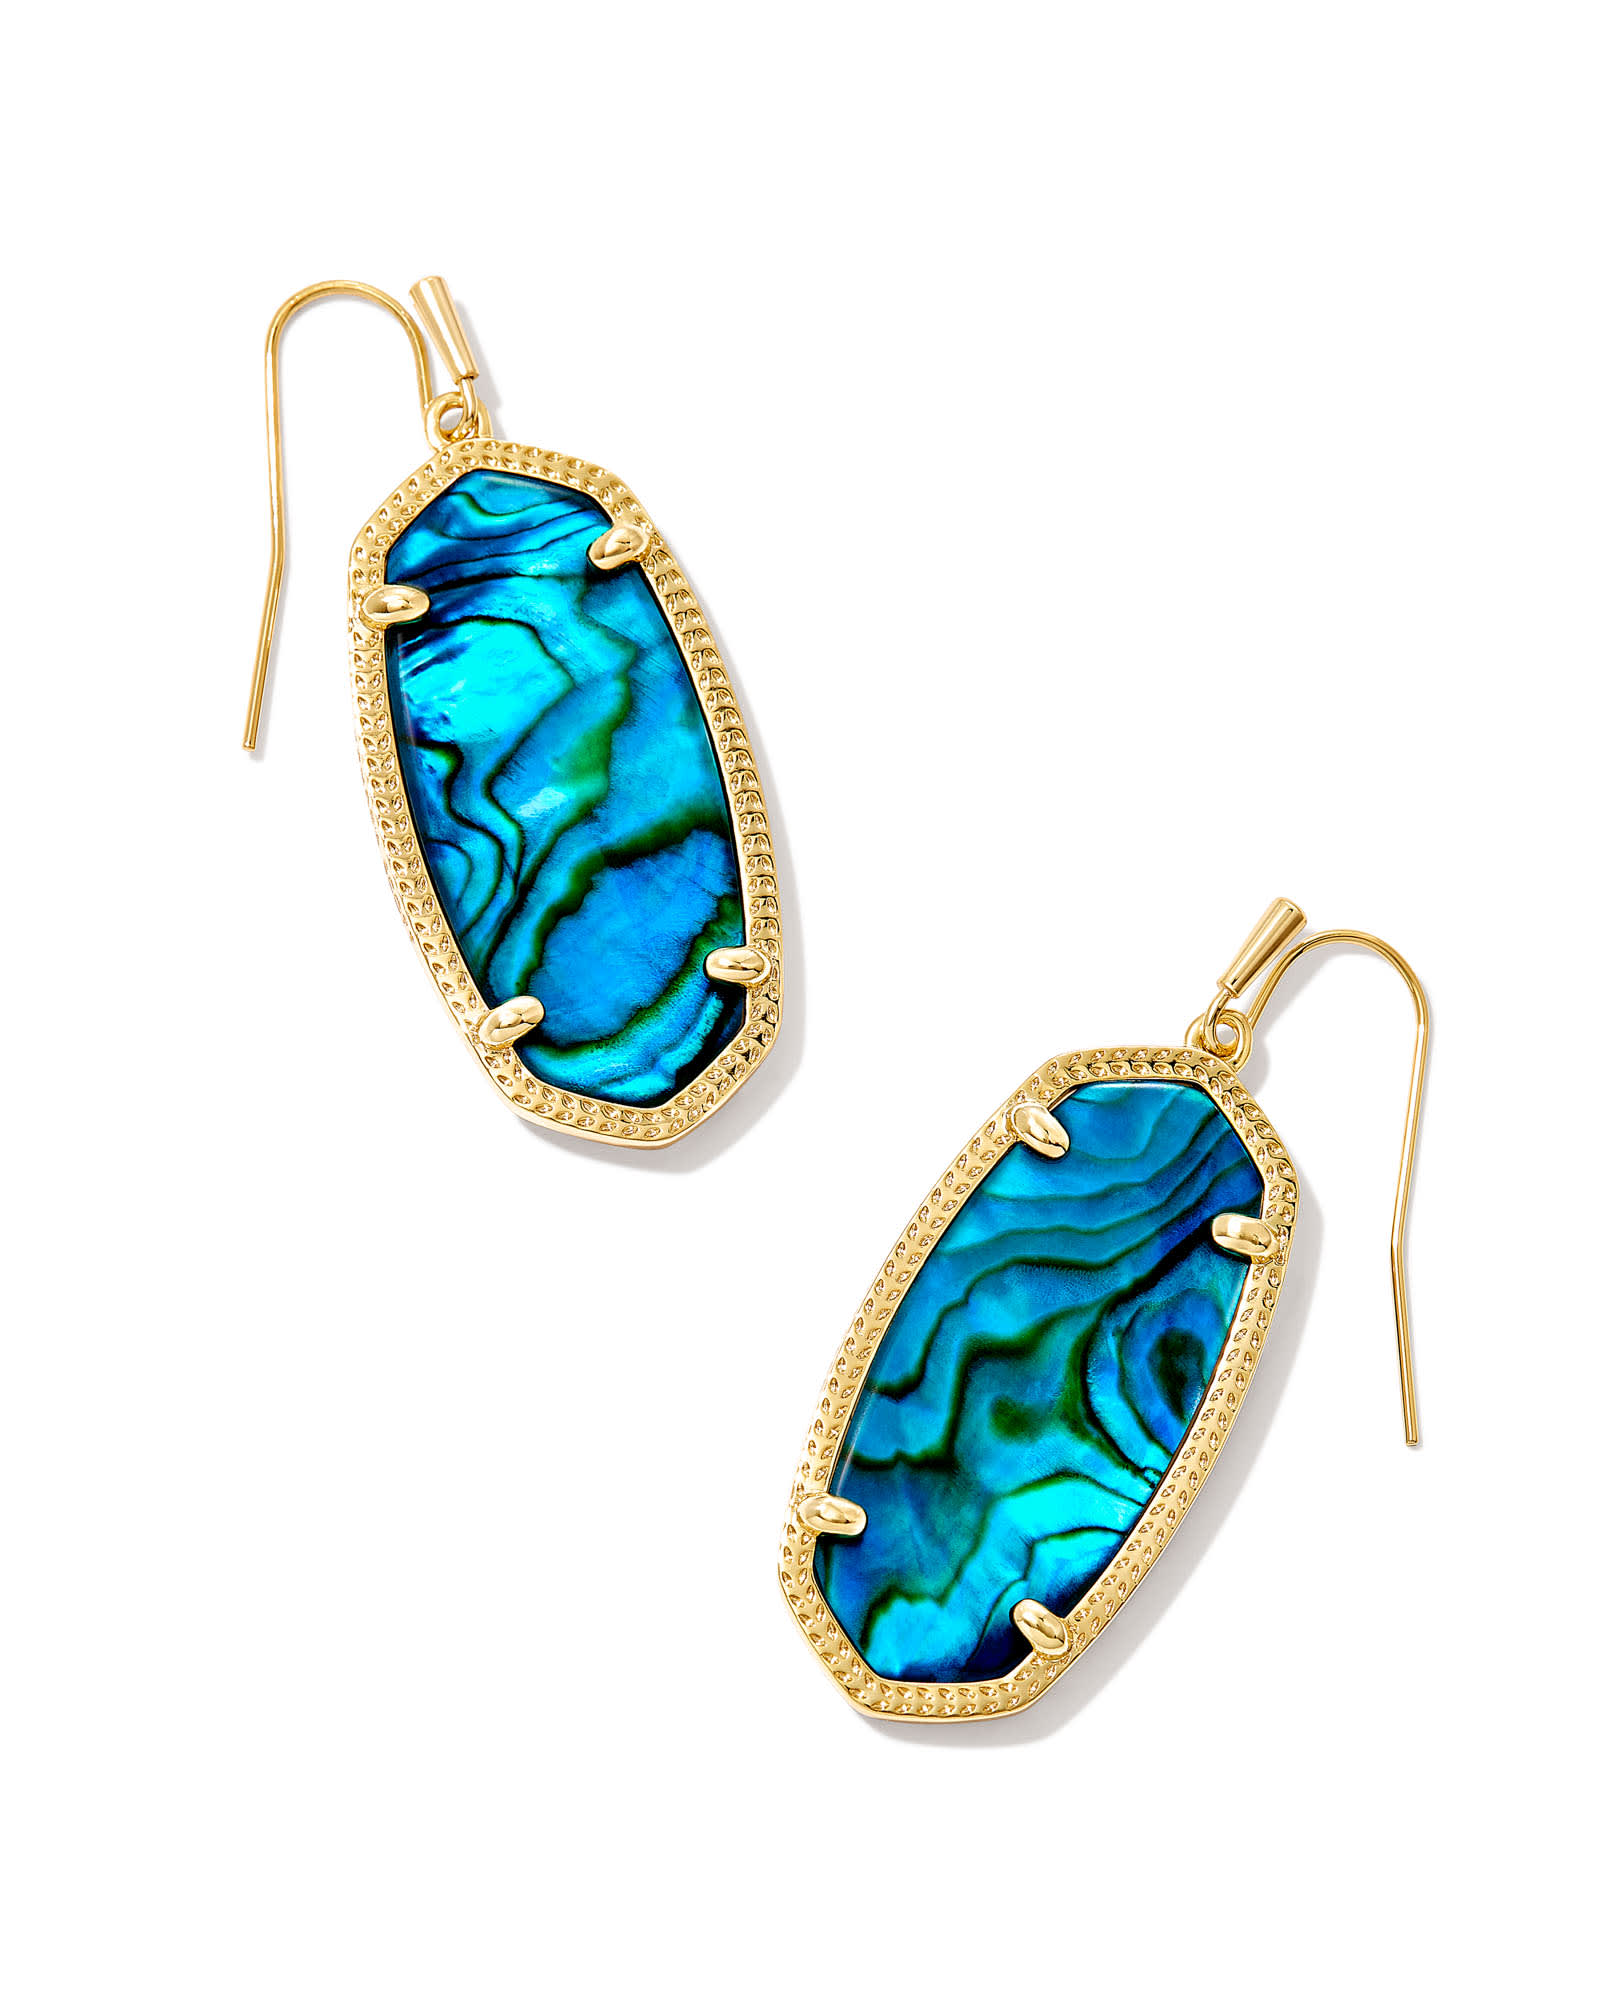 Kendra Scott Elle Gold Drop Earrings in Teal Abalone | Kyocera Opal